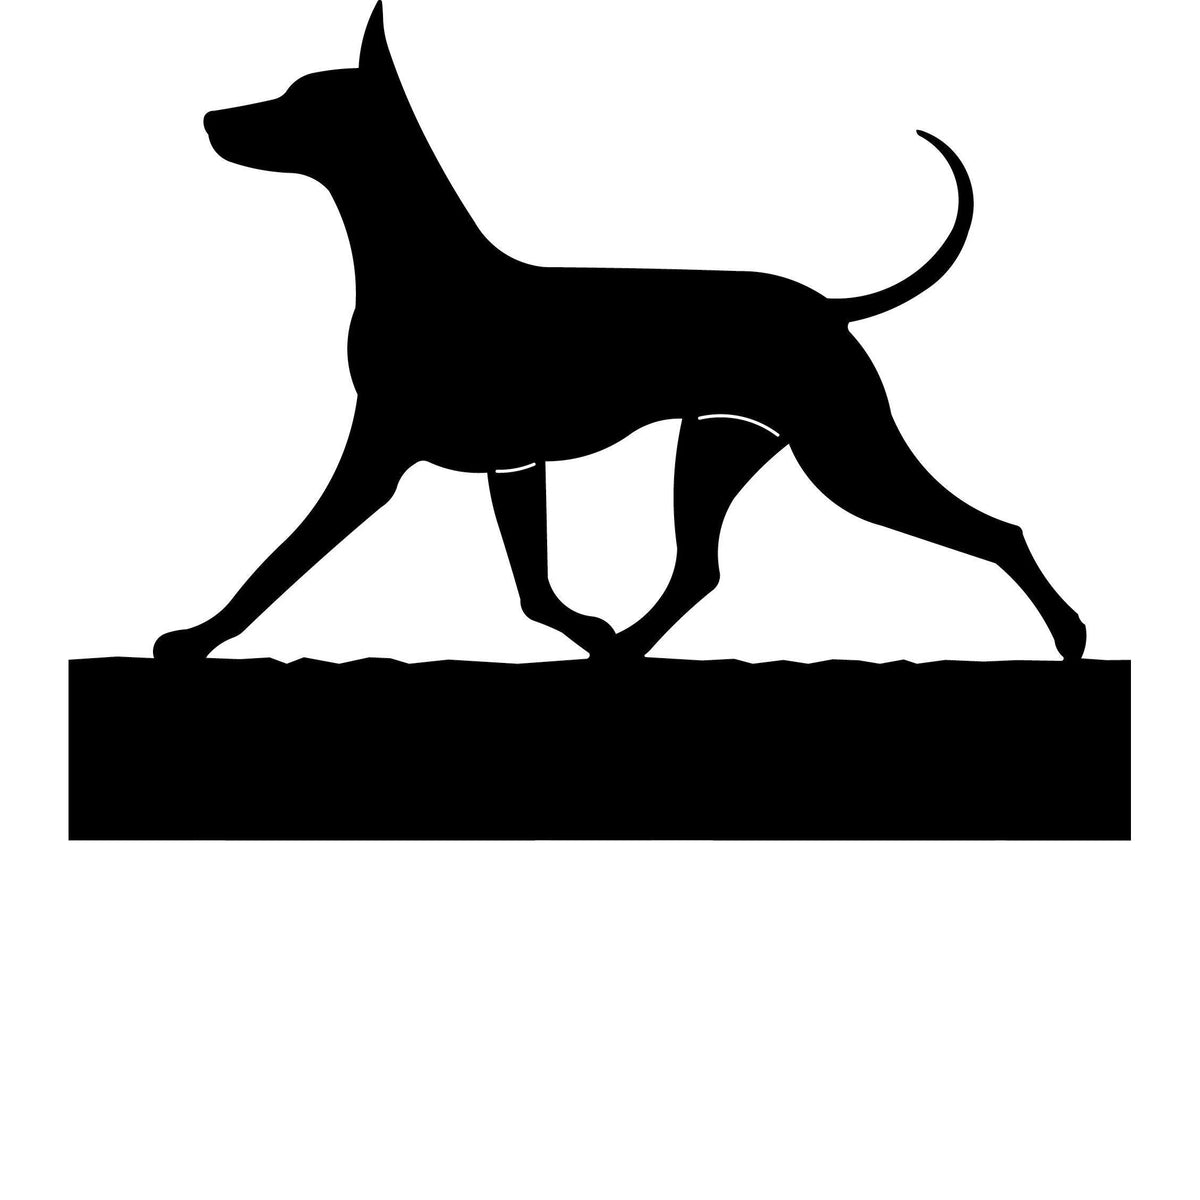 Xoloitzcuintli dog address stake